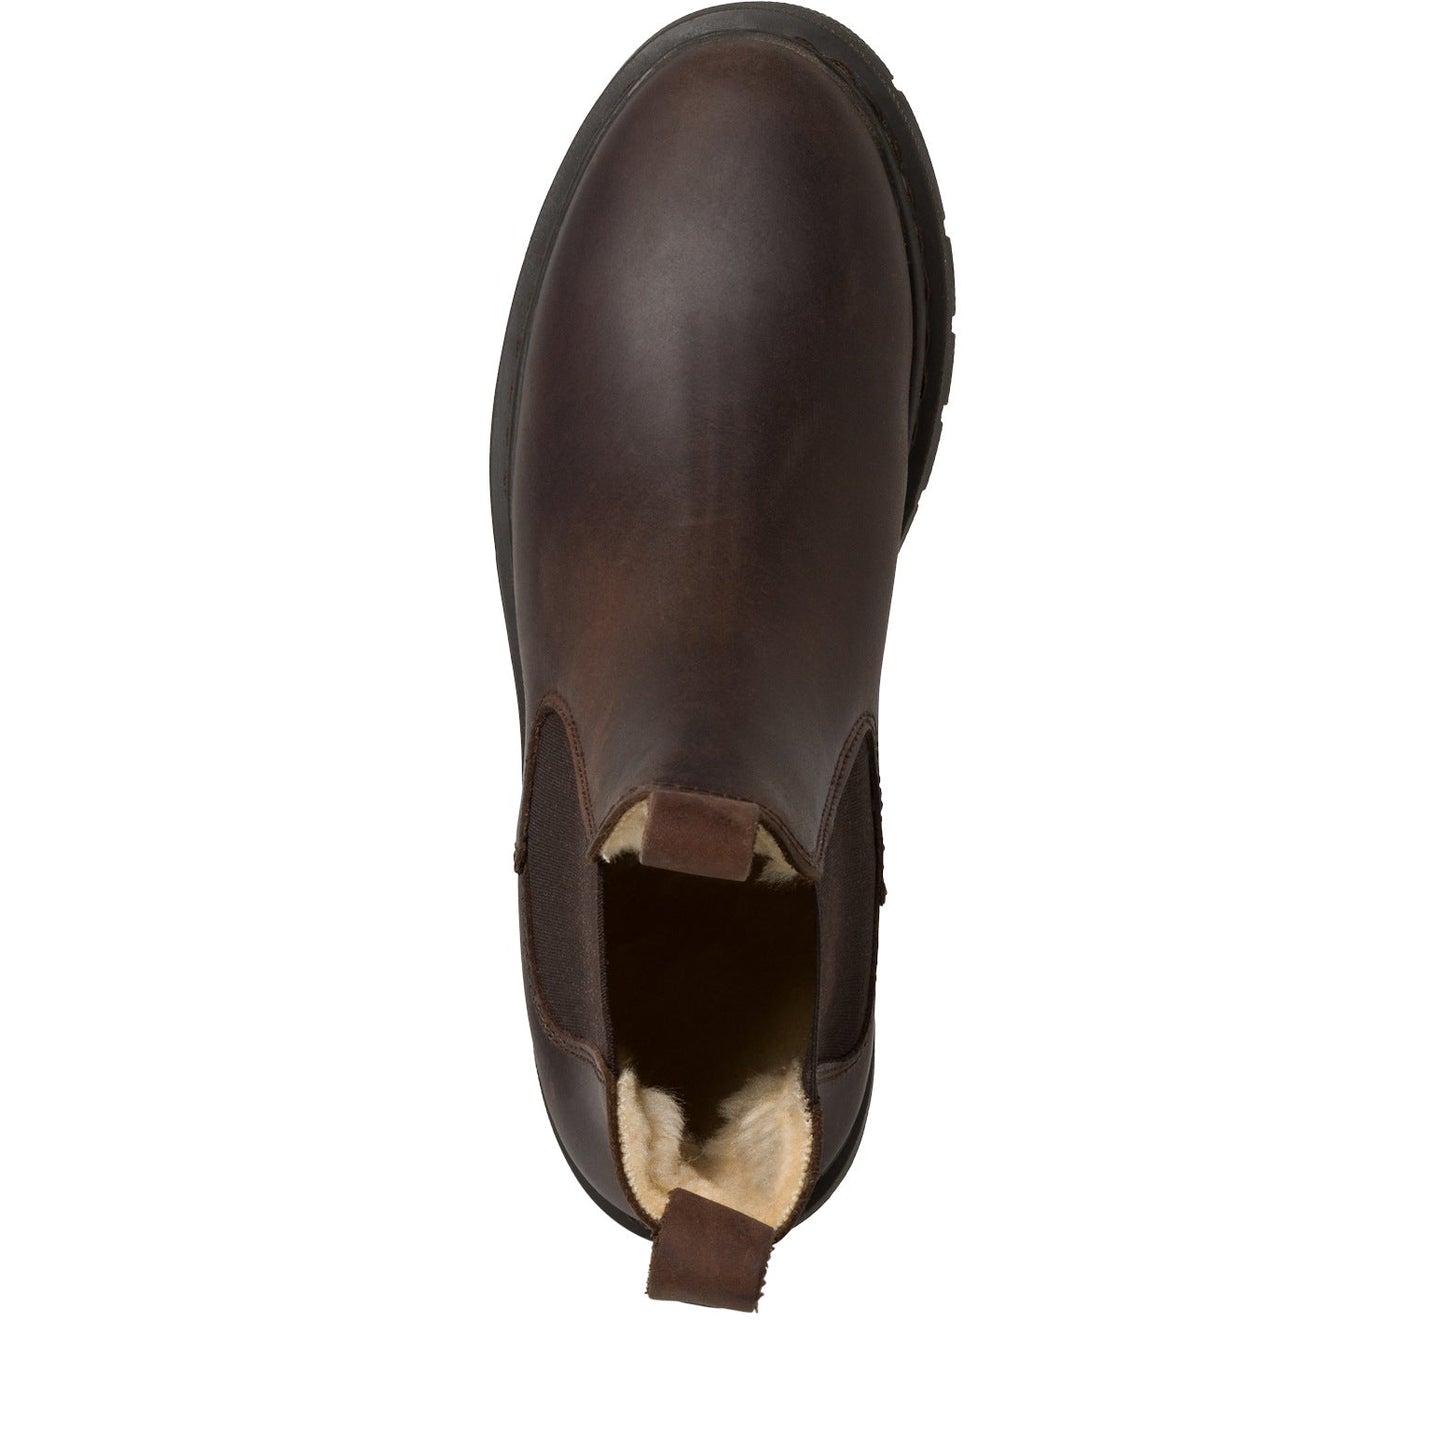 Damen-Boots - Steinick Schuhe